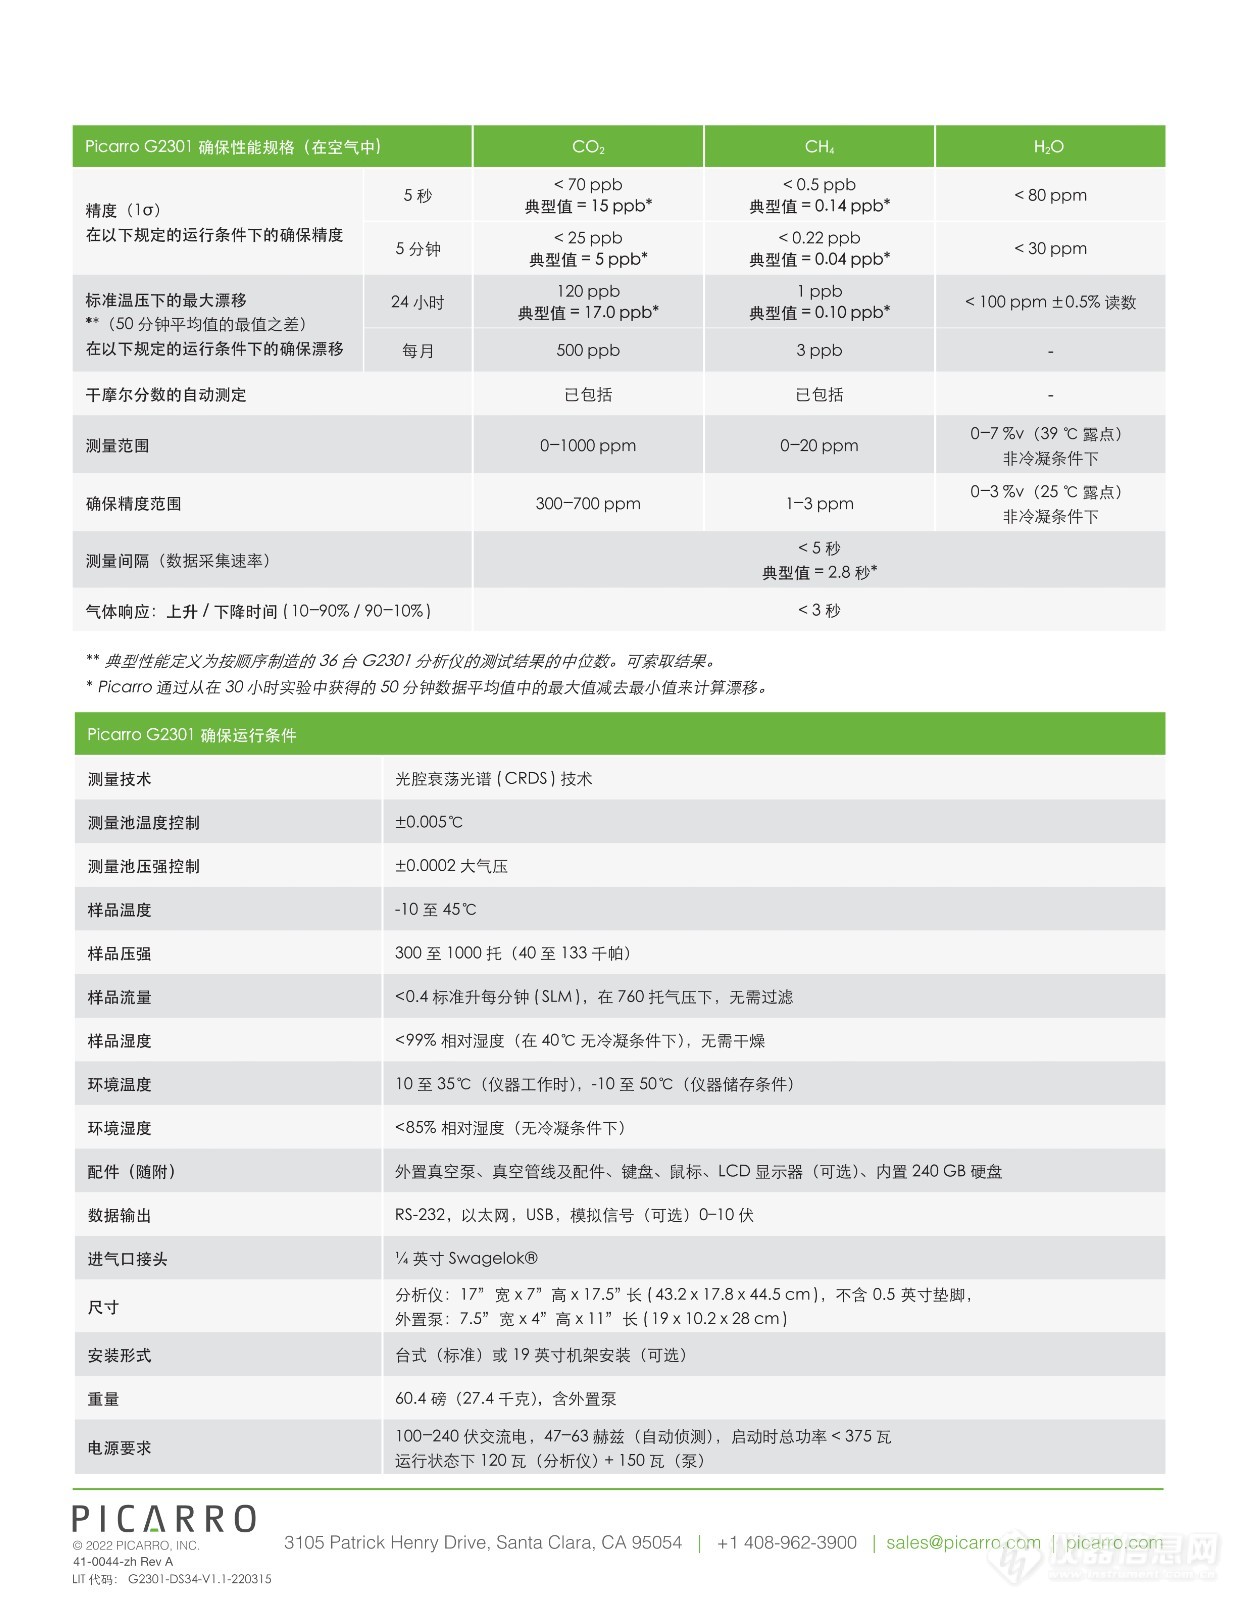 Picarro_G2301 Chinese Datasheet_220317_2.jpg